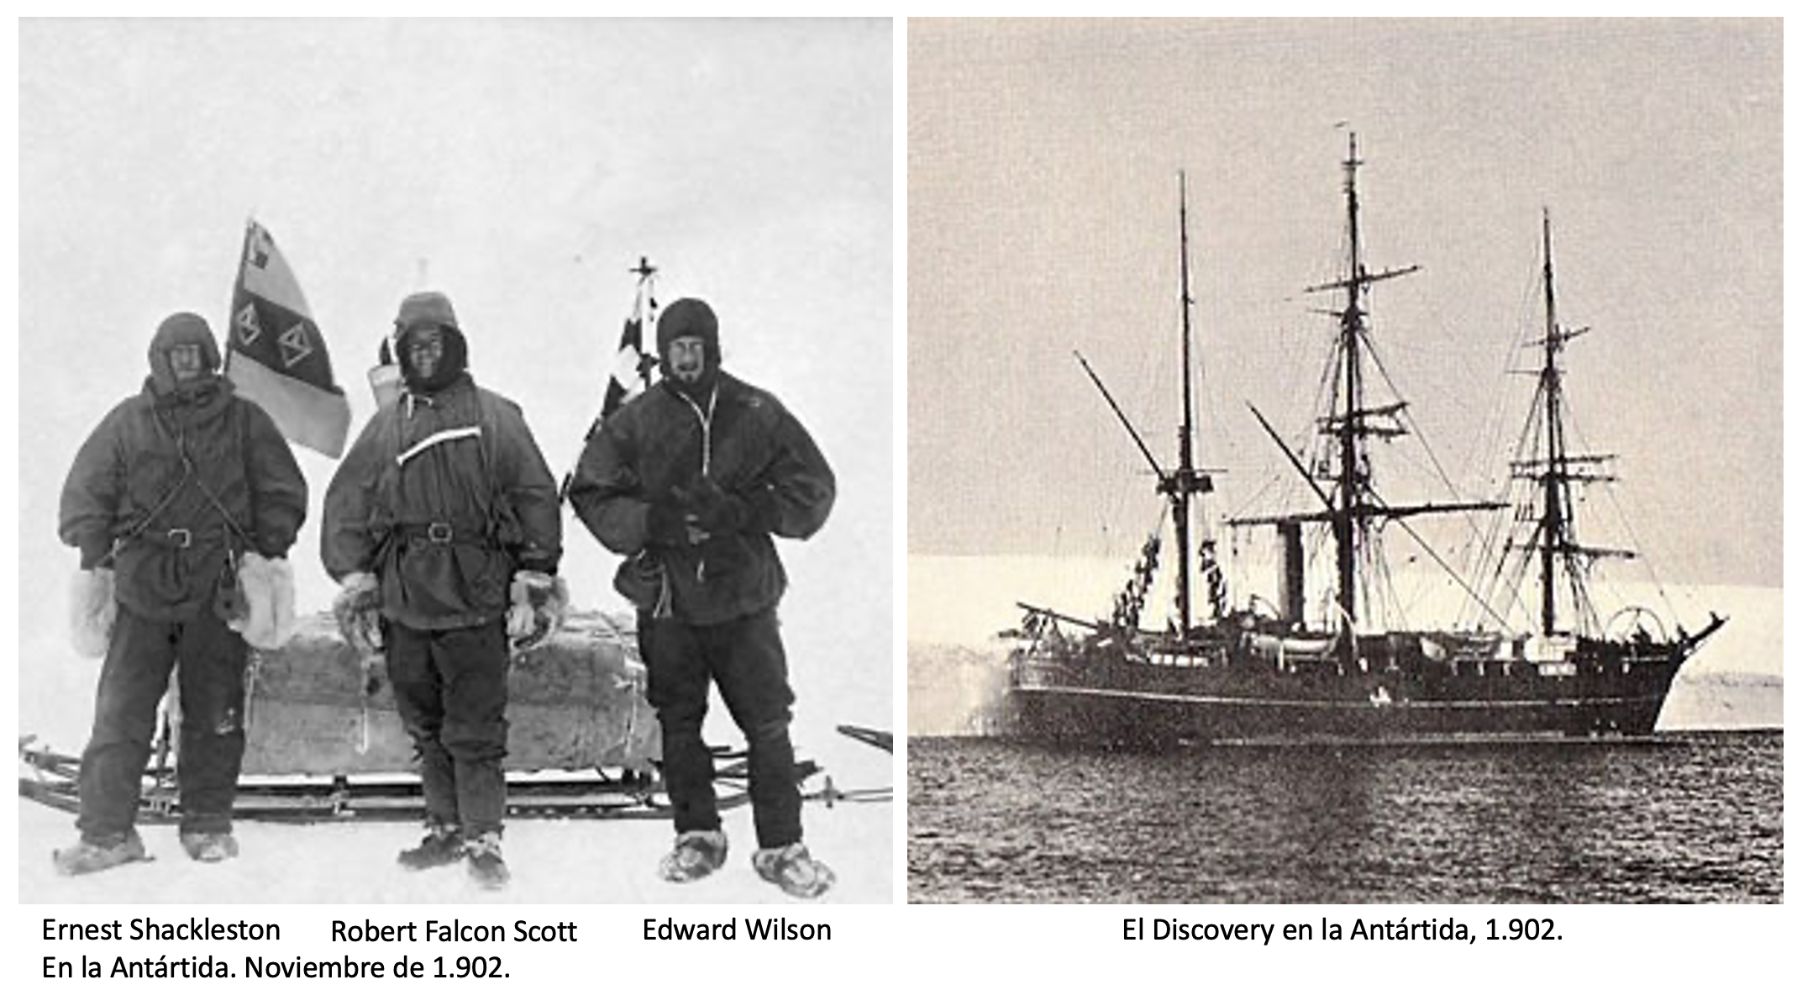 En-la-Antartida-1902-rrs-discovery-foto-fuente-wikipedia-lugaresdeaventura.jpg